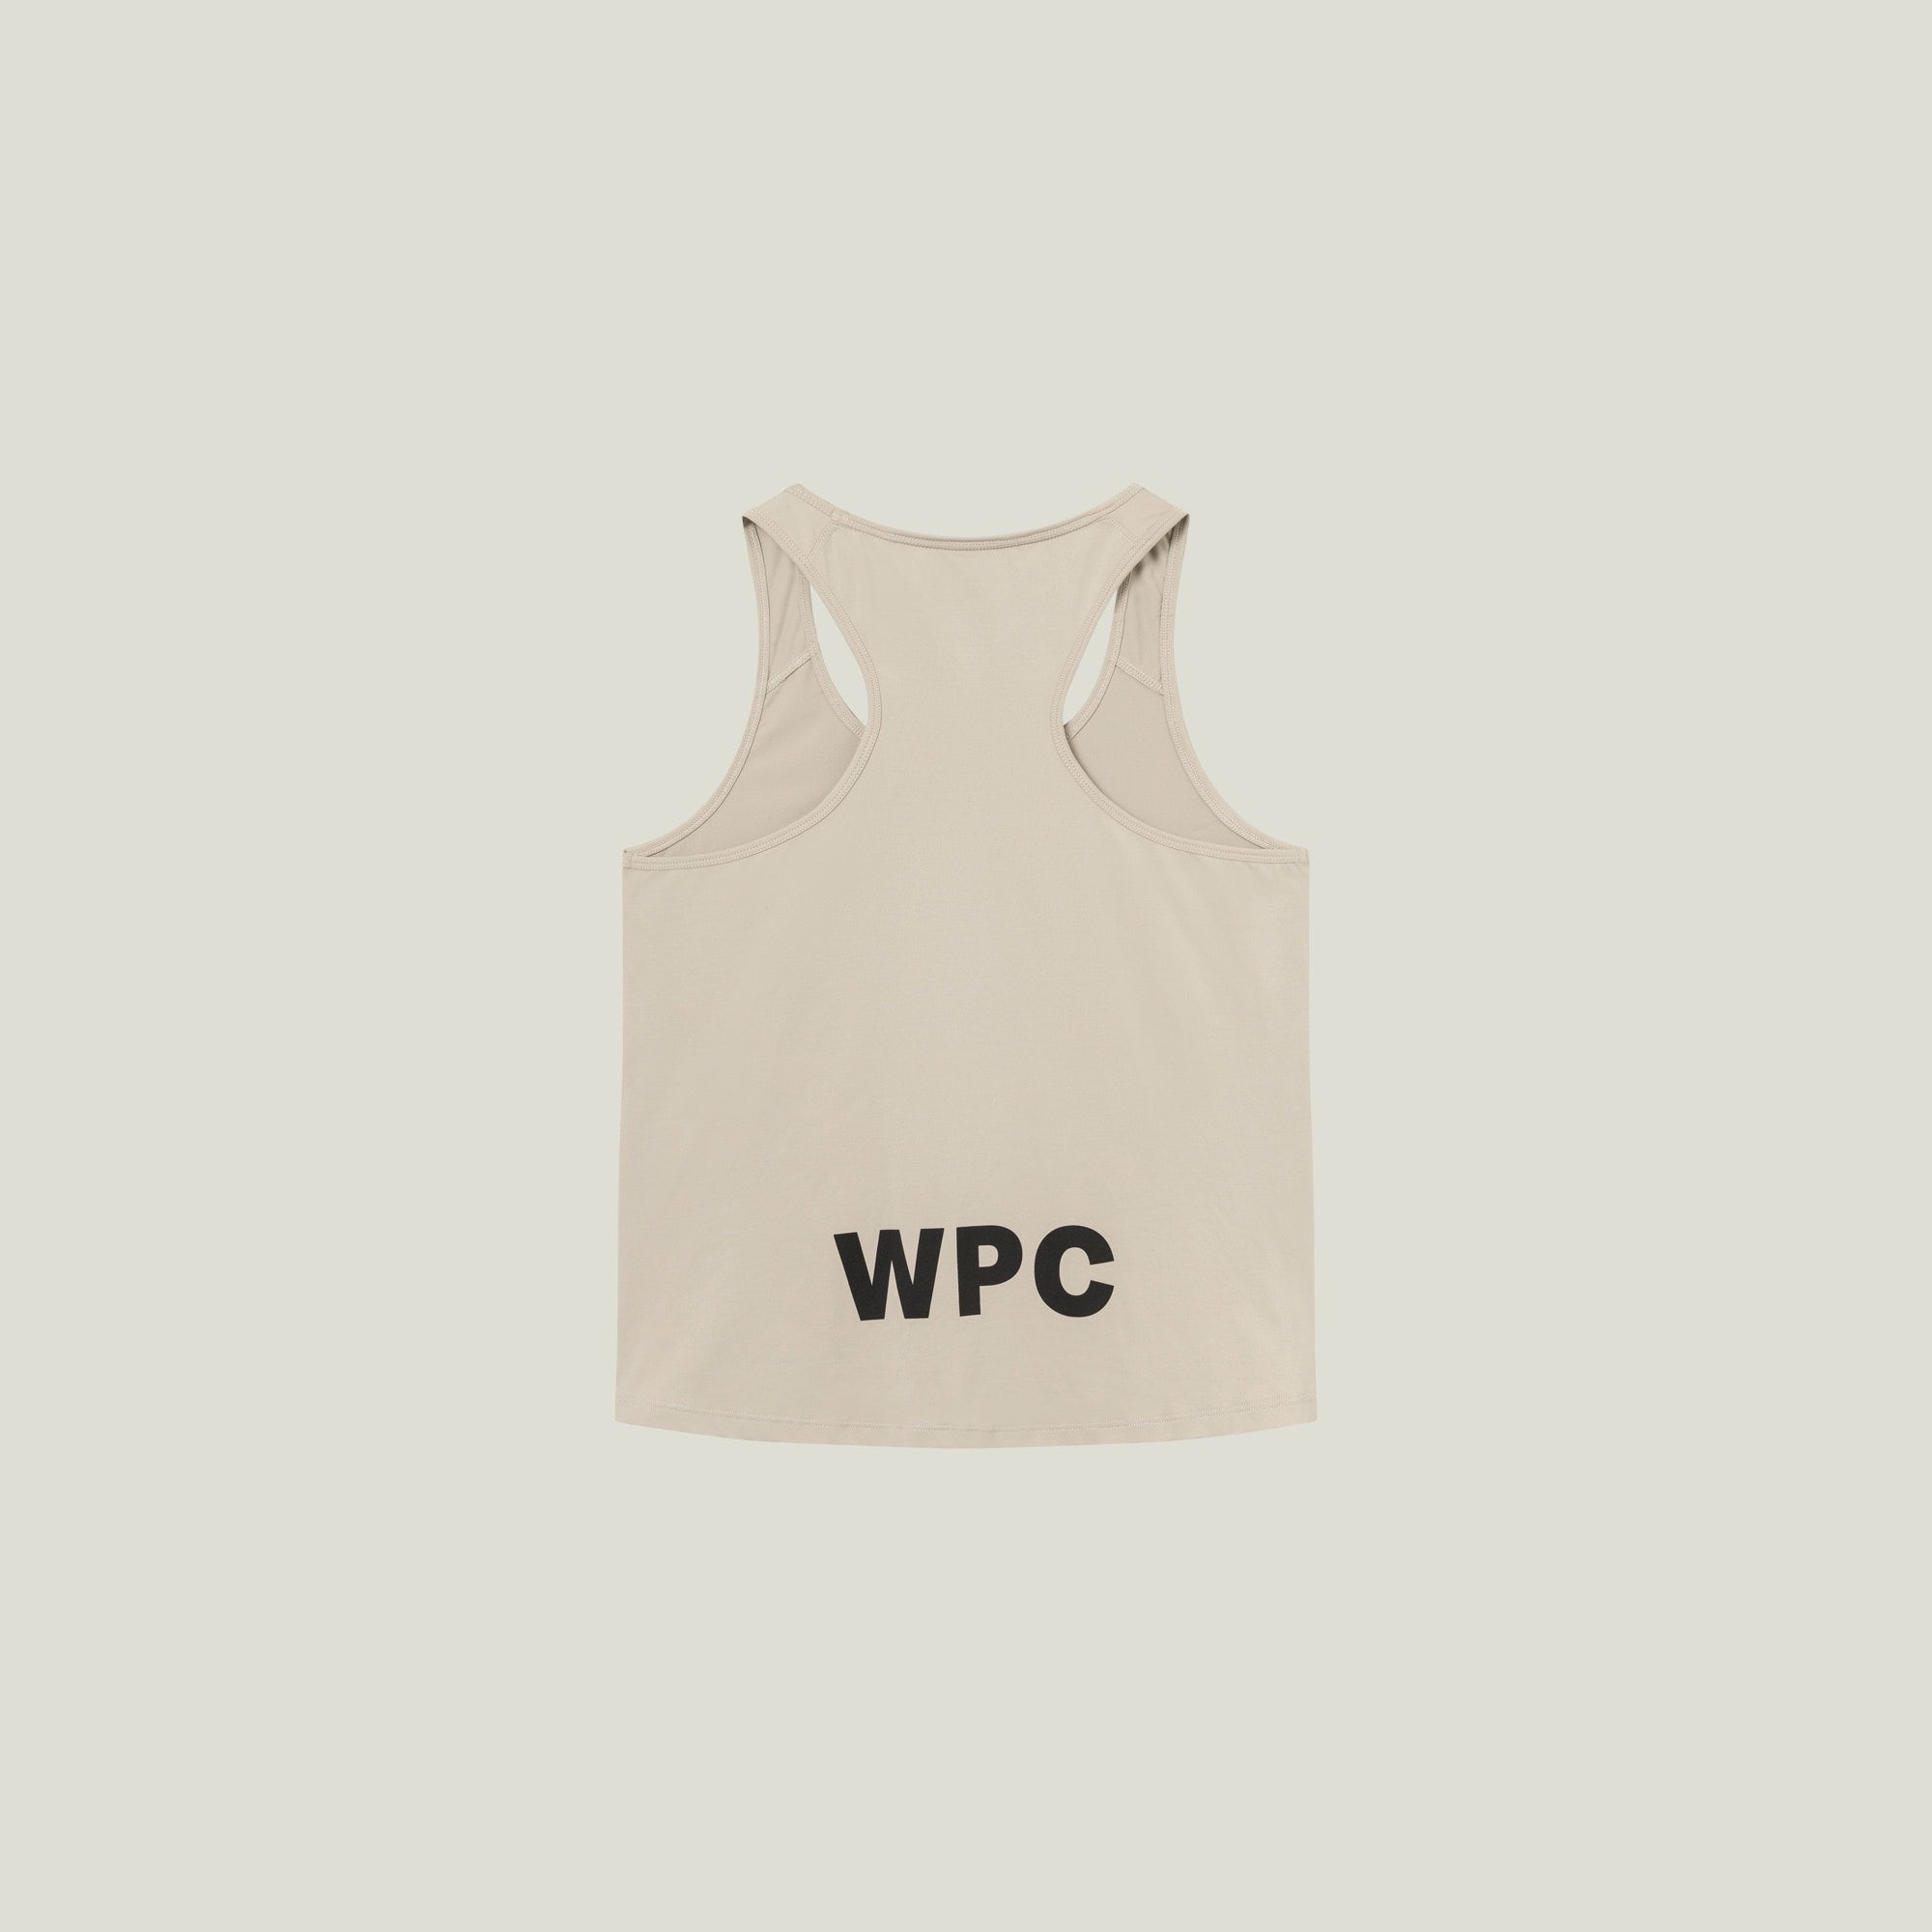 Official WPC Female Uniform